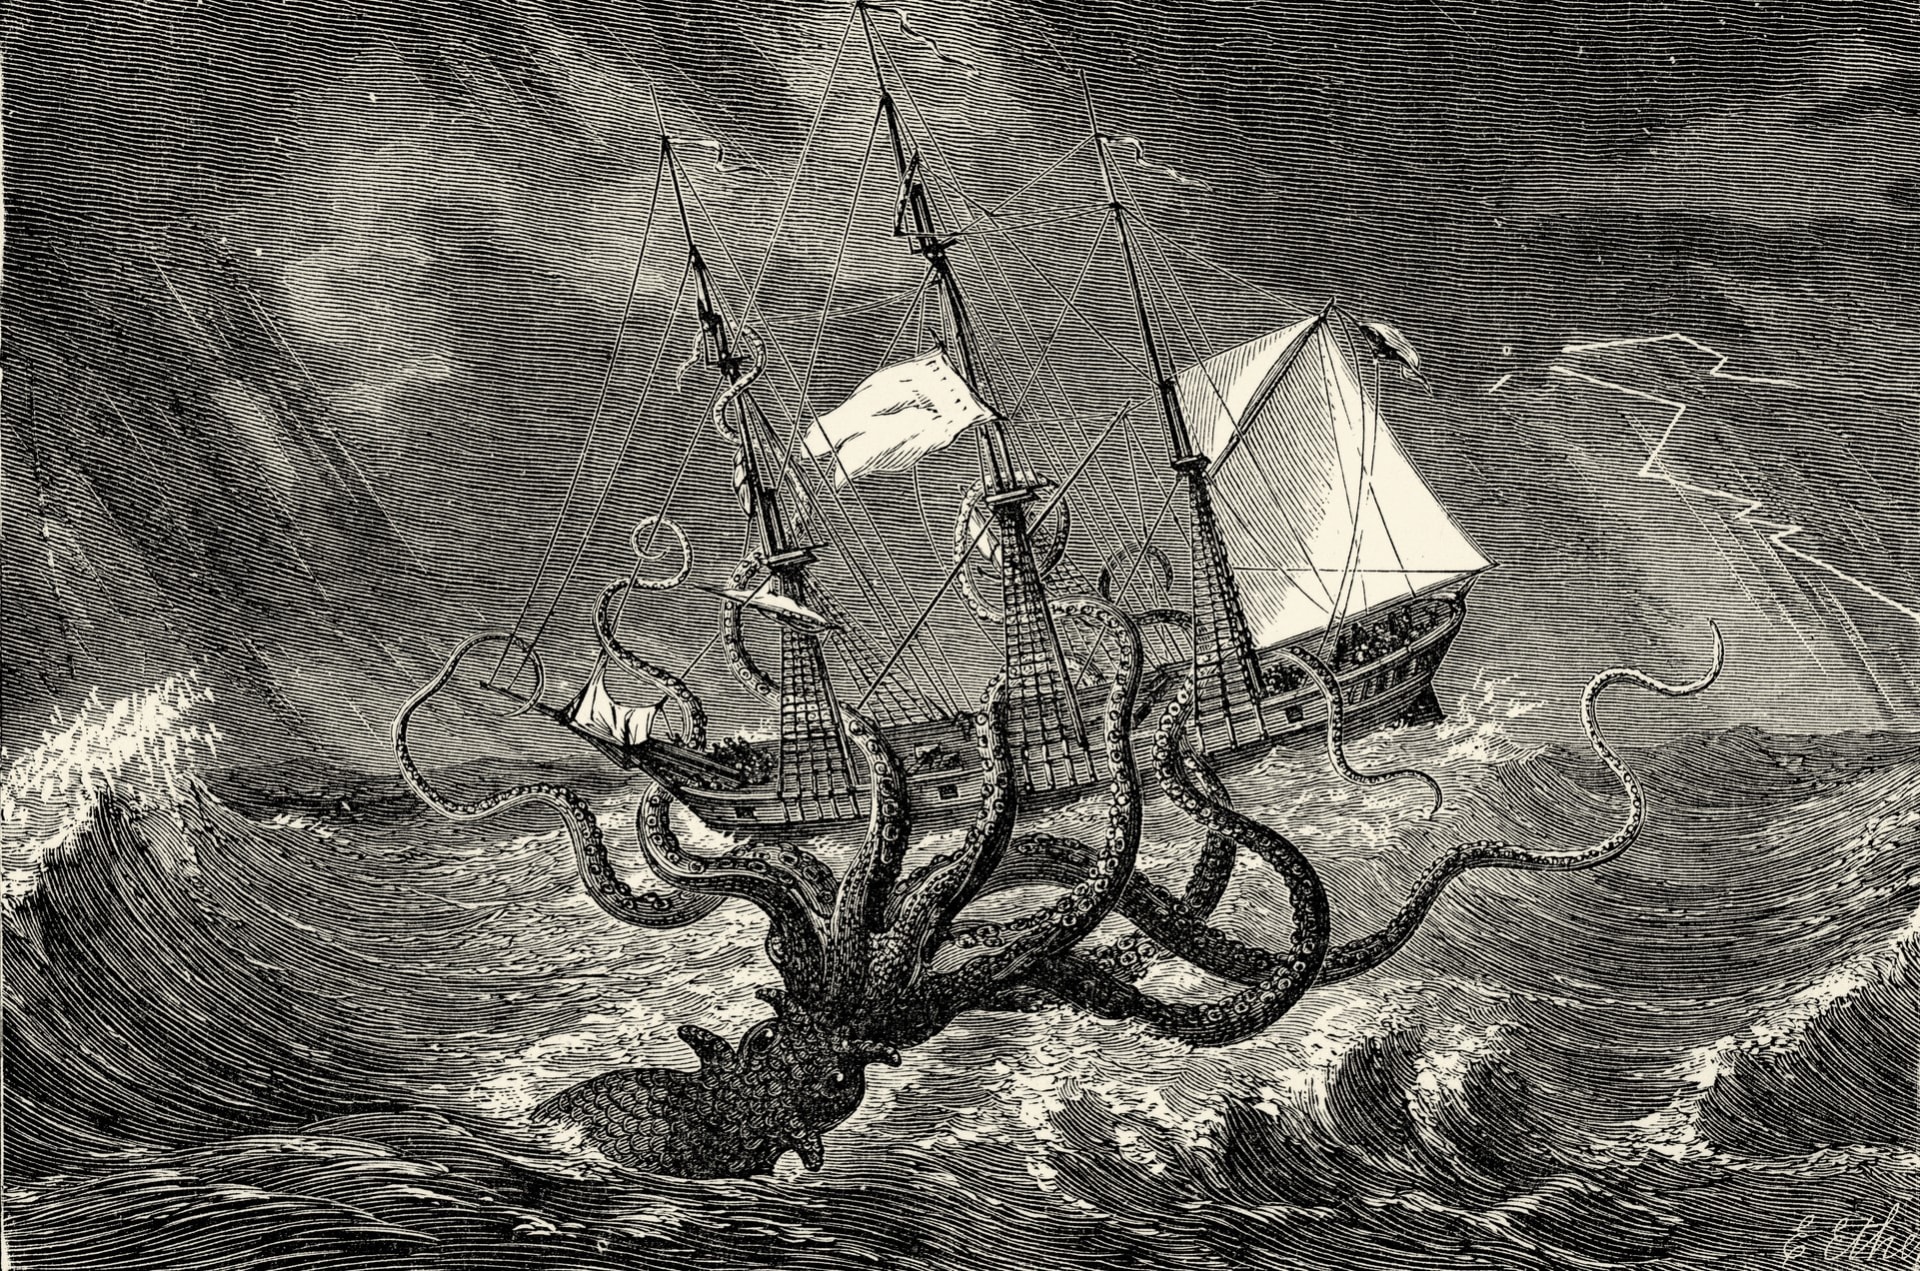 Vyobrazení mořské příšery krakena